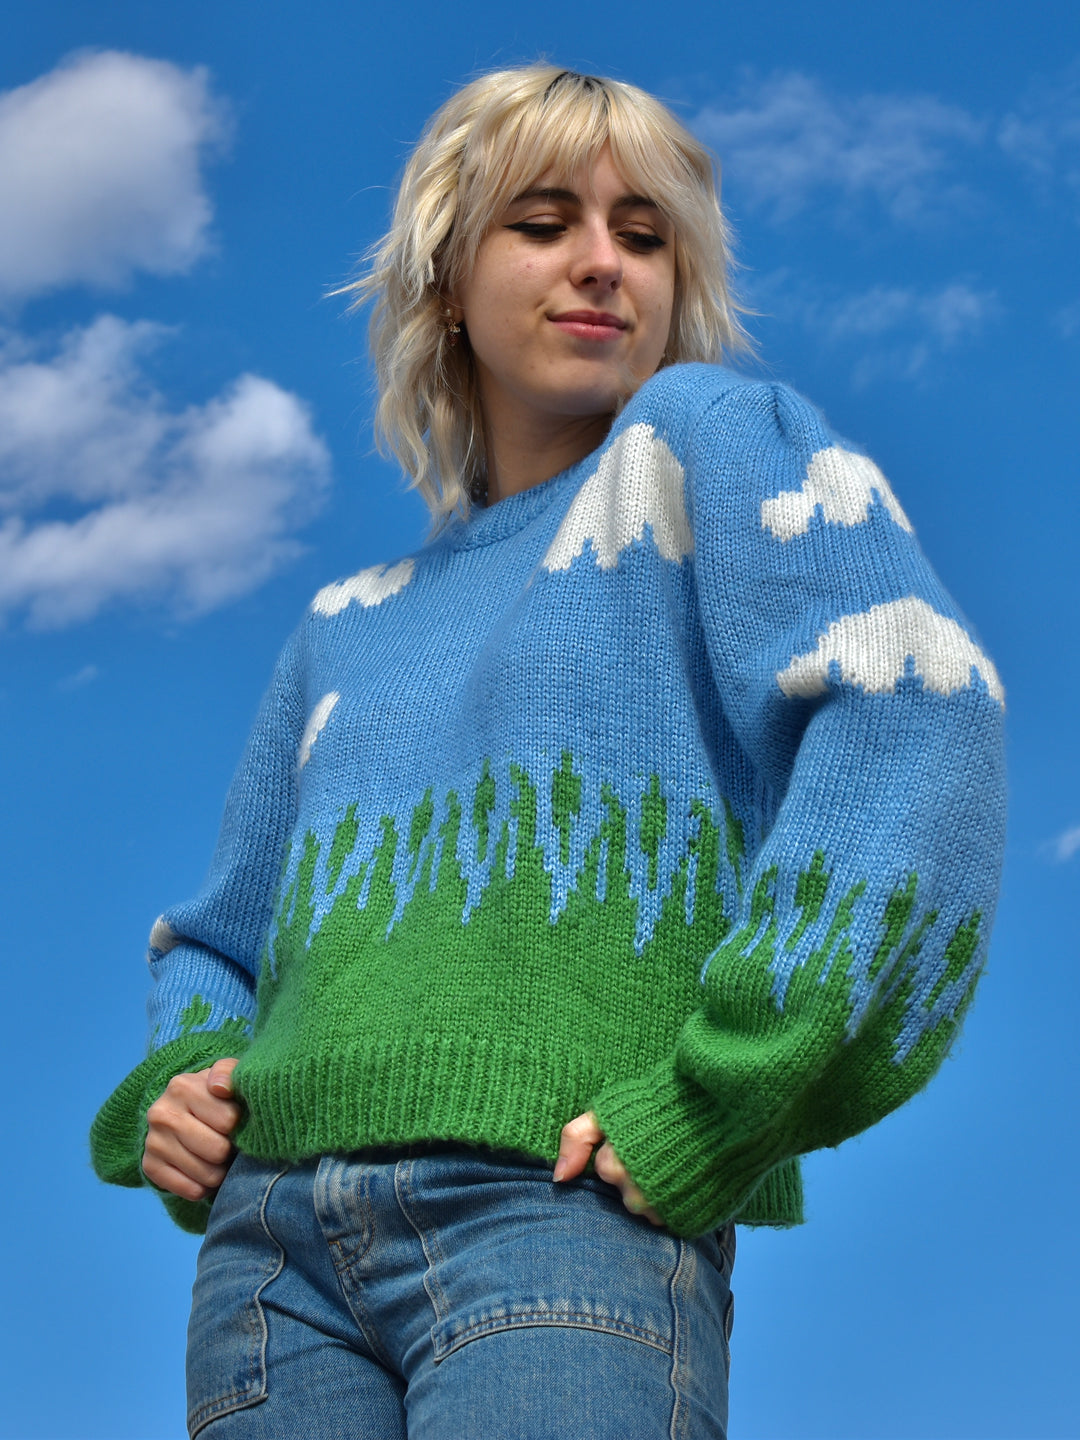 Cloud Sweater